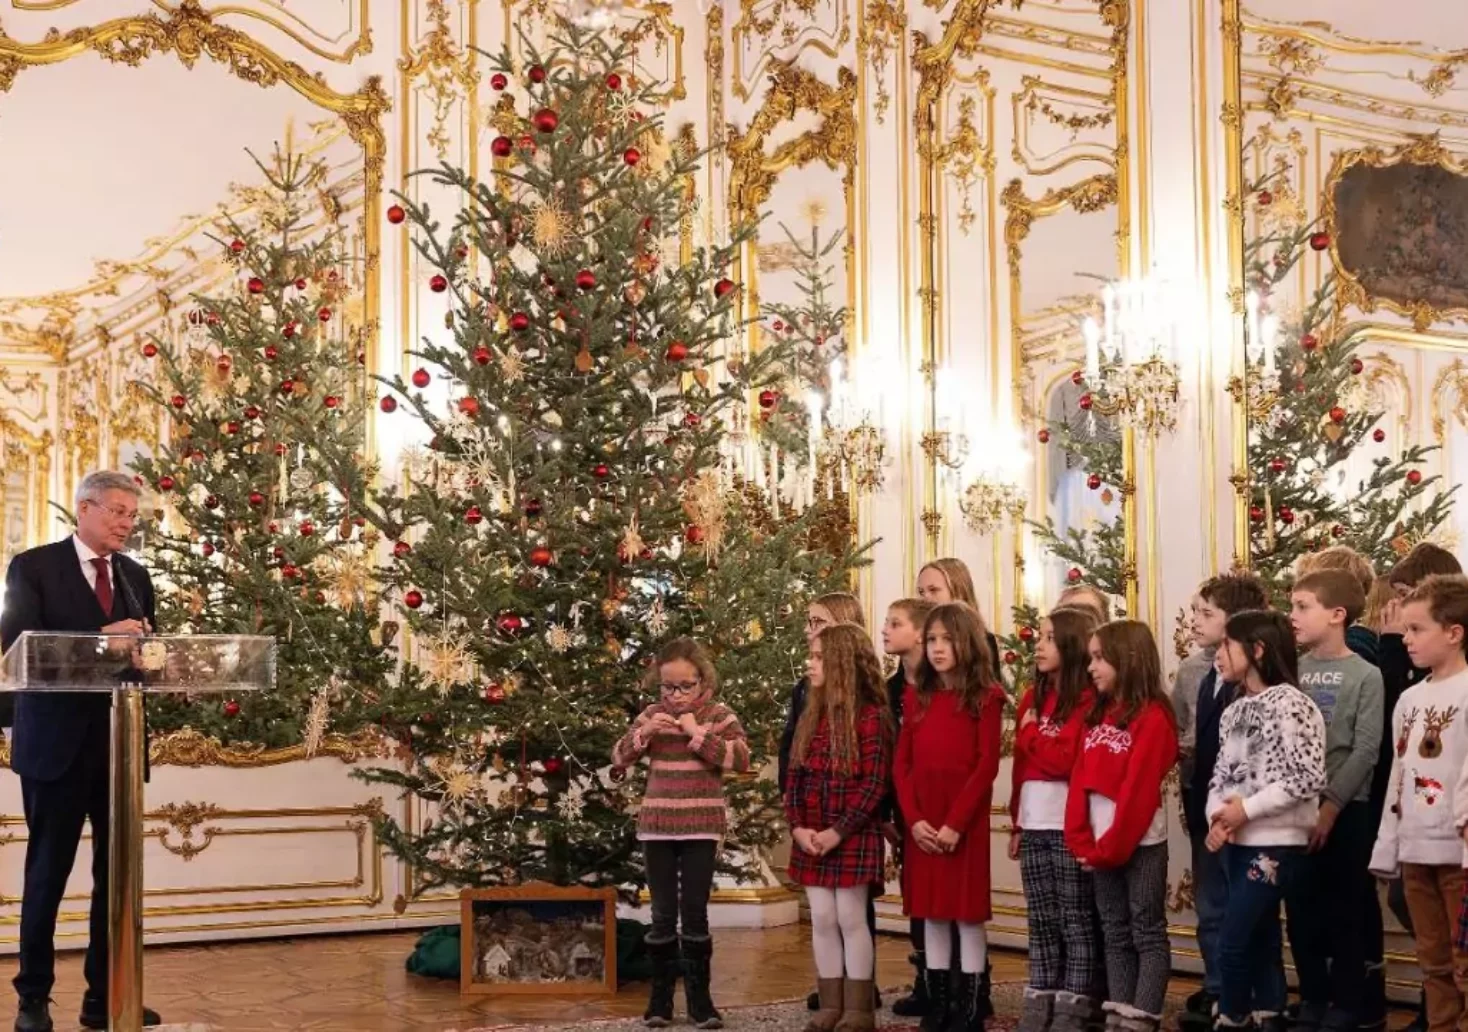 Foto in Beitrag von 5min.at: Zu sehen ist der Weihnachtsbaum in der Hofburg und die zahlreichen Kinder, die davor gesungen haben.